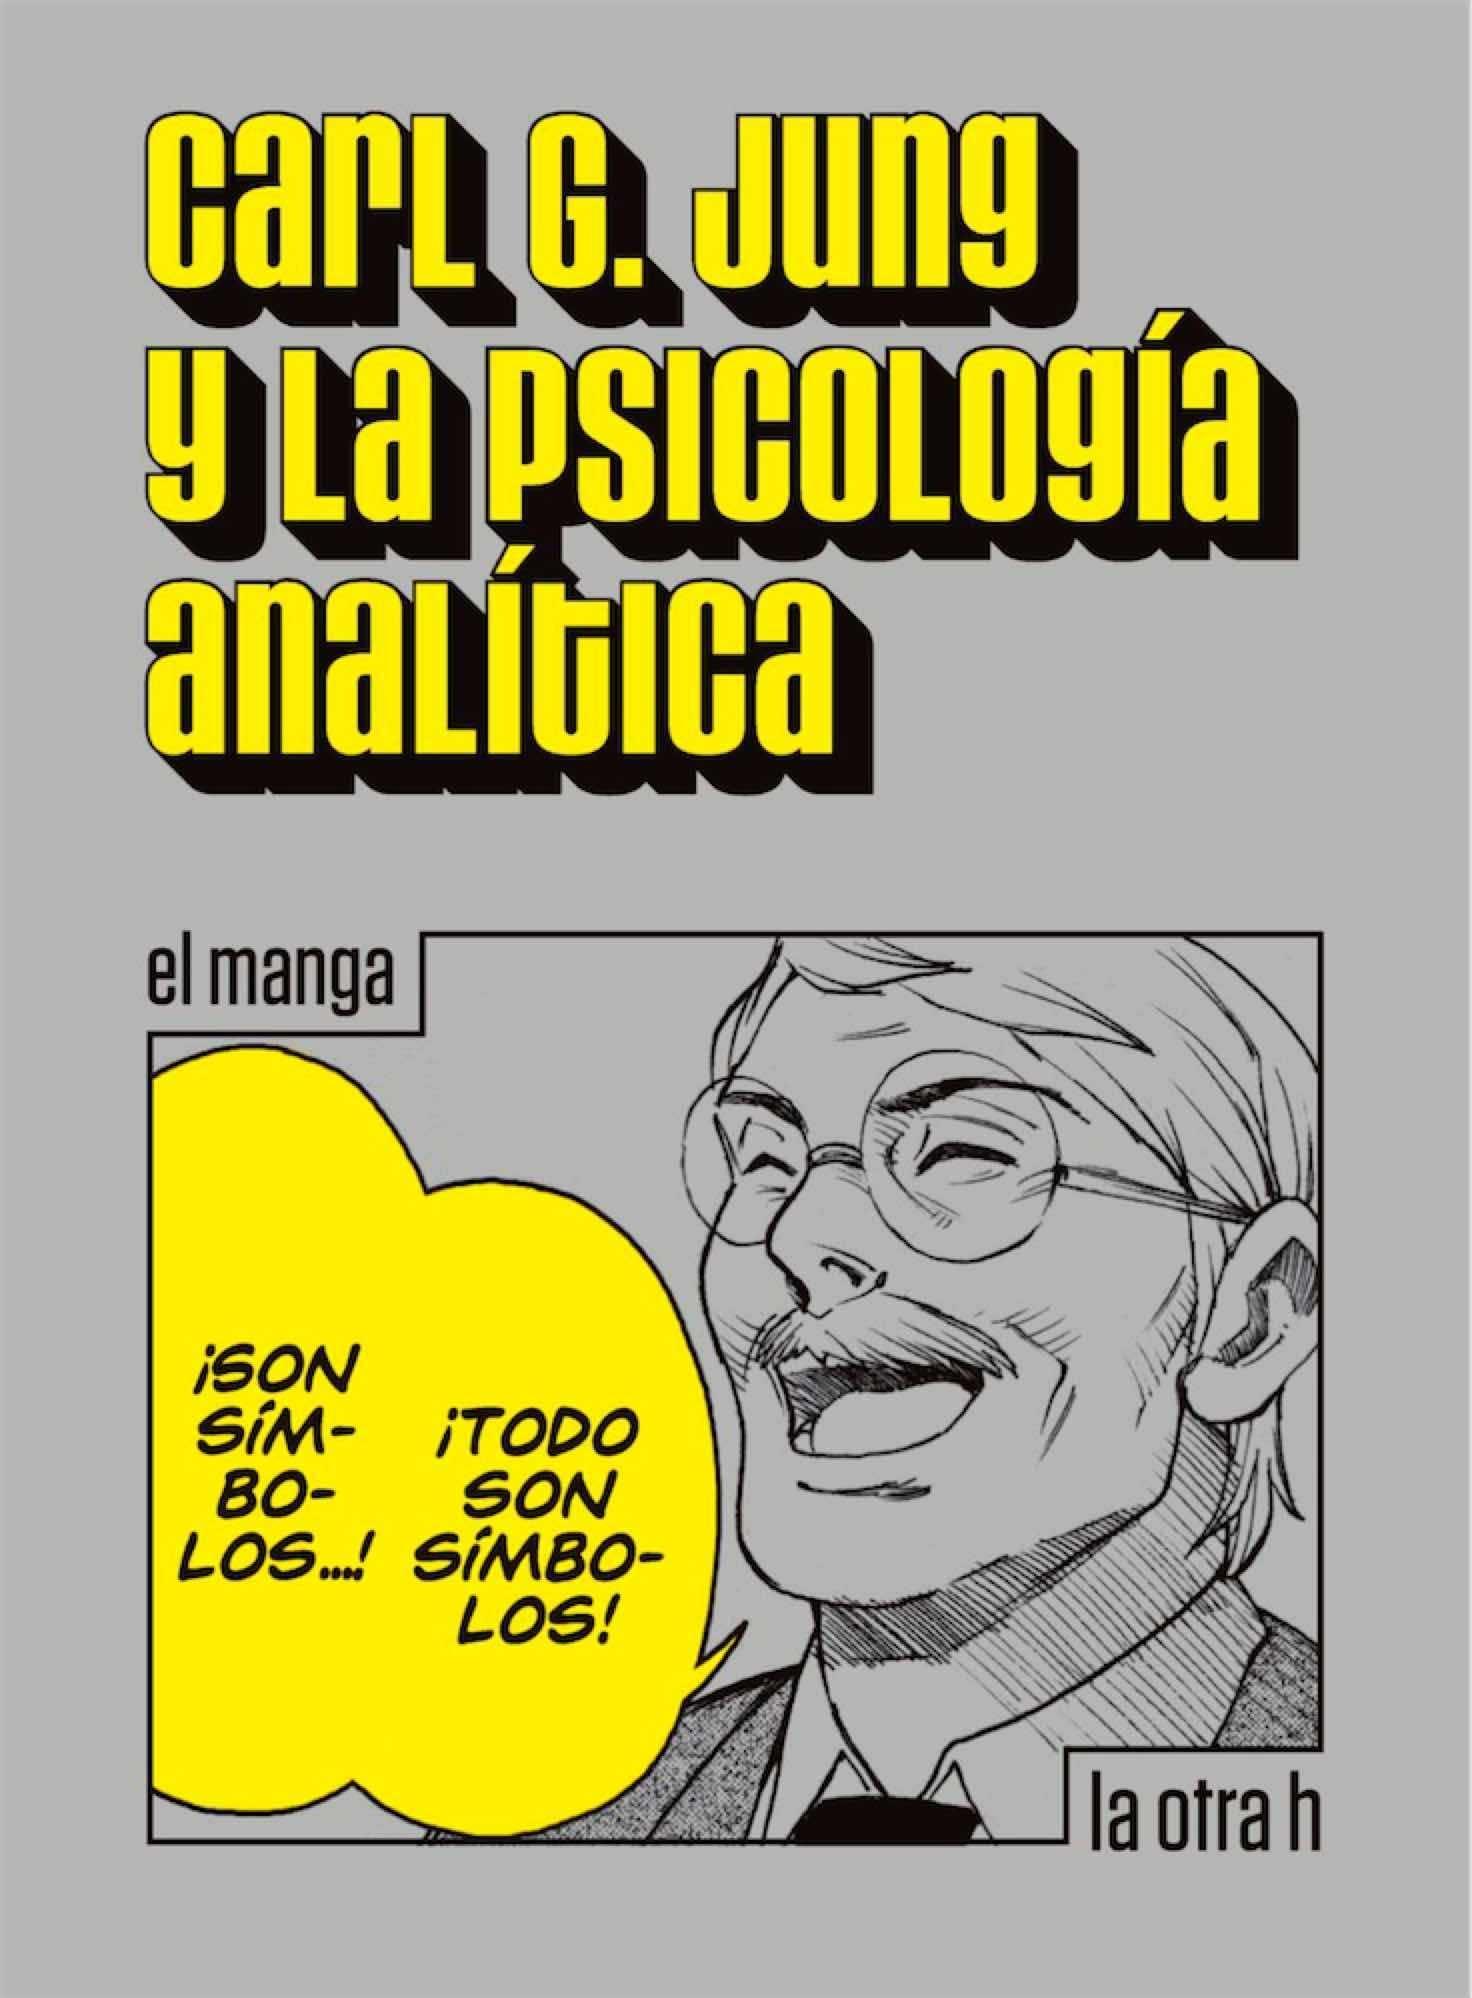 Psicología analítica. 